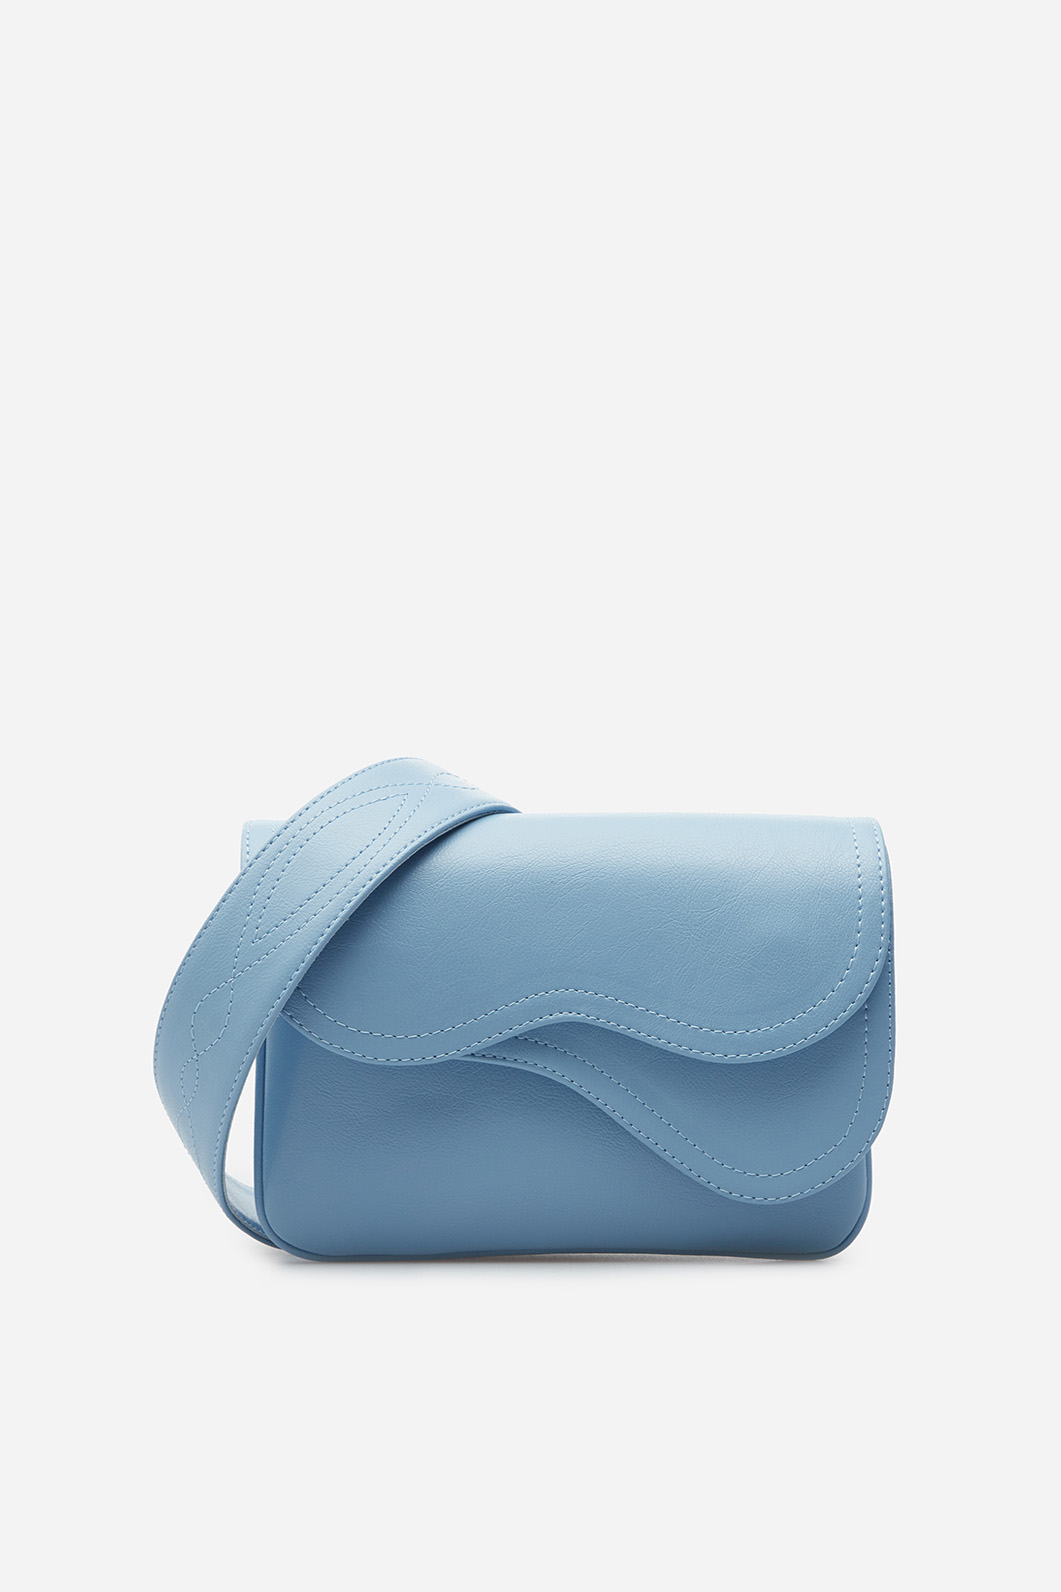 Кросбоди Saddle bag mini из голубой кожи /серебро/